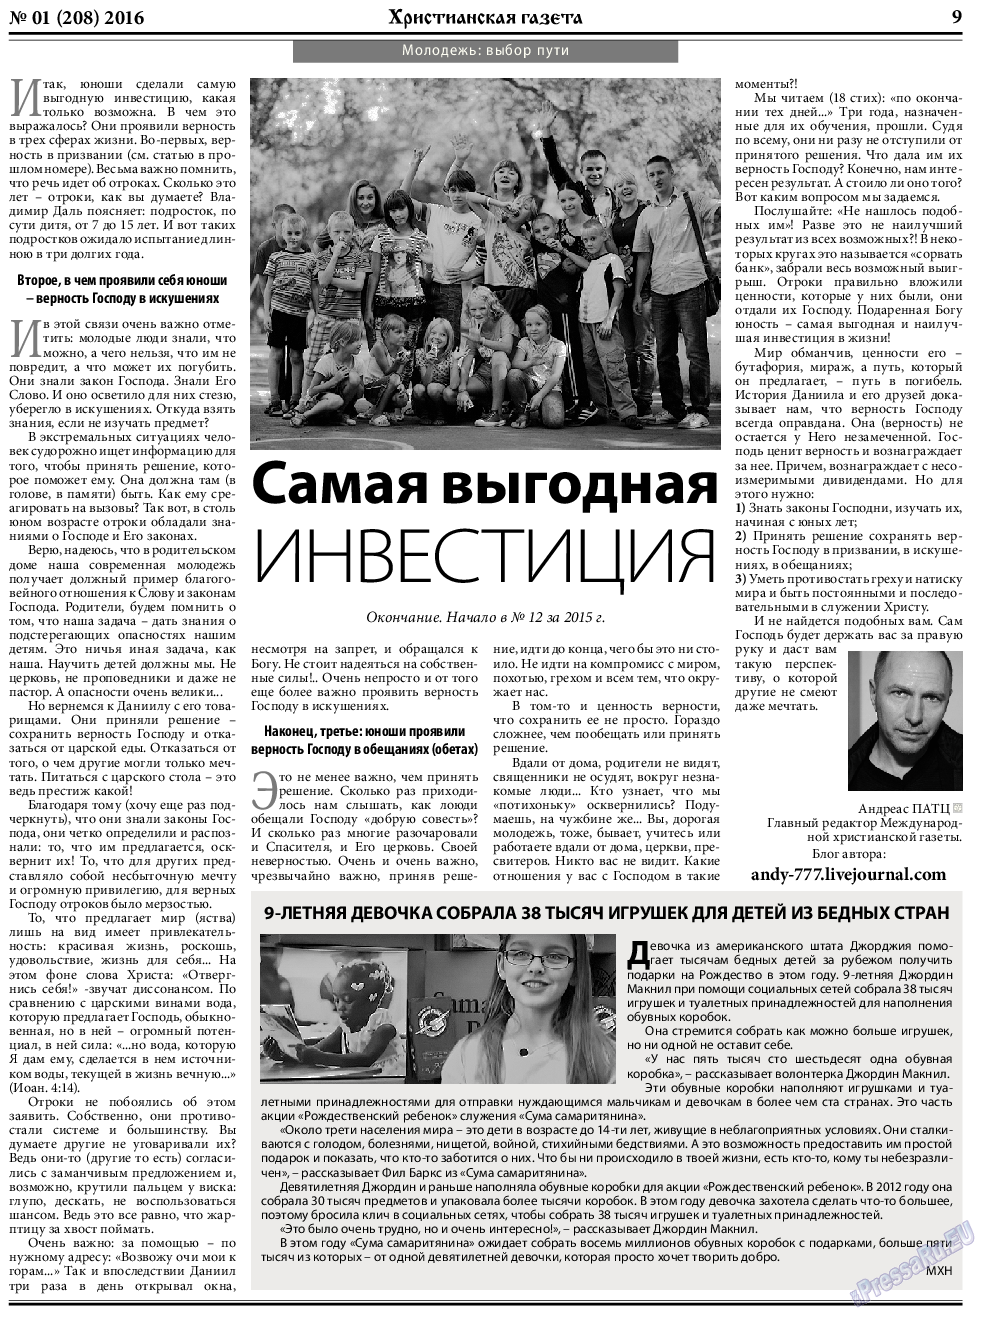 Христианская газета, газета. 2016 №1 стр.9